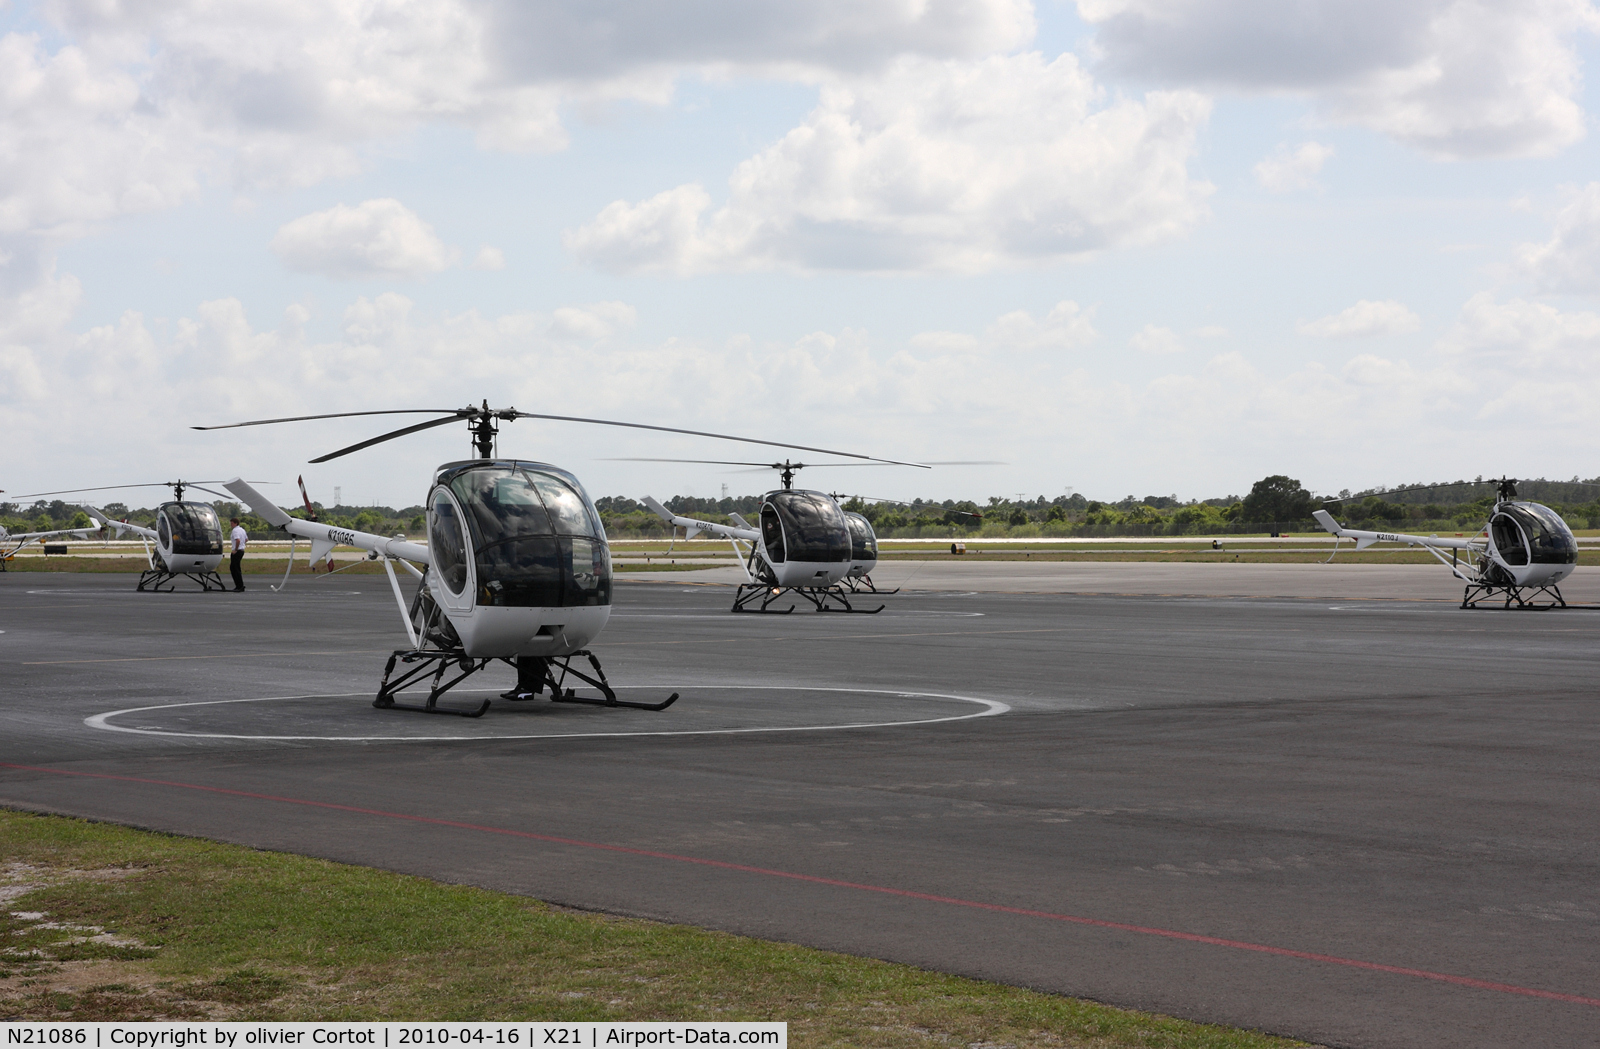 N21086, 2005 Schweizer 269C-1 C/N 0196, the chopper on the left ;-)